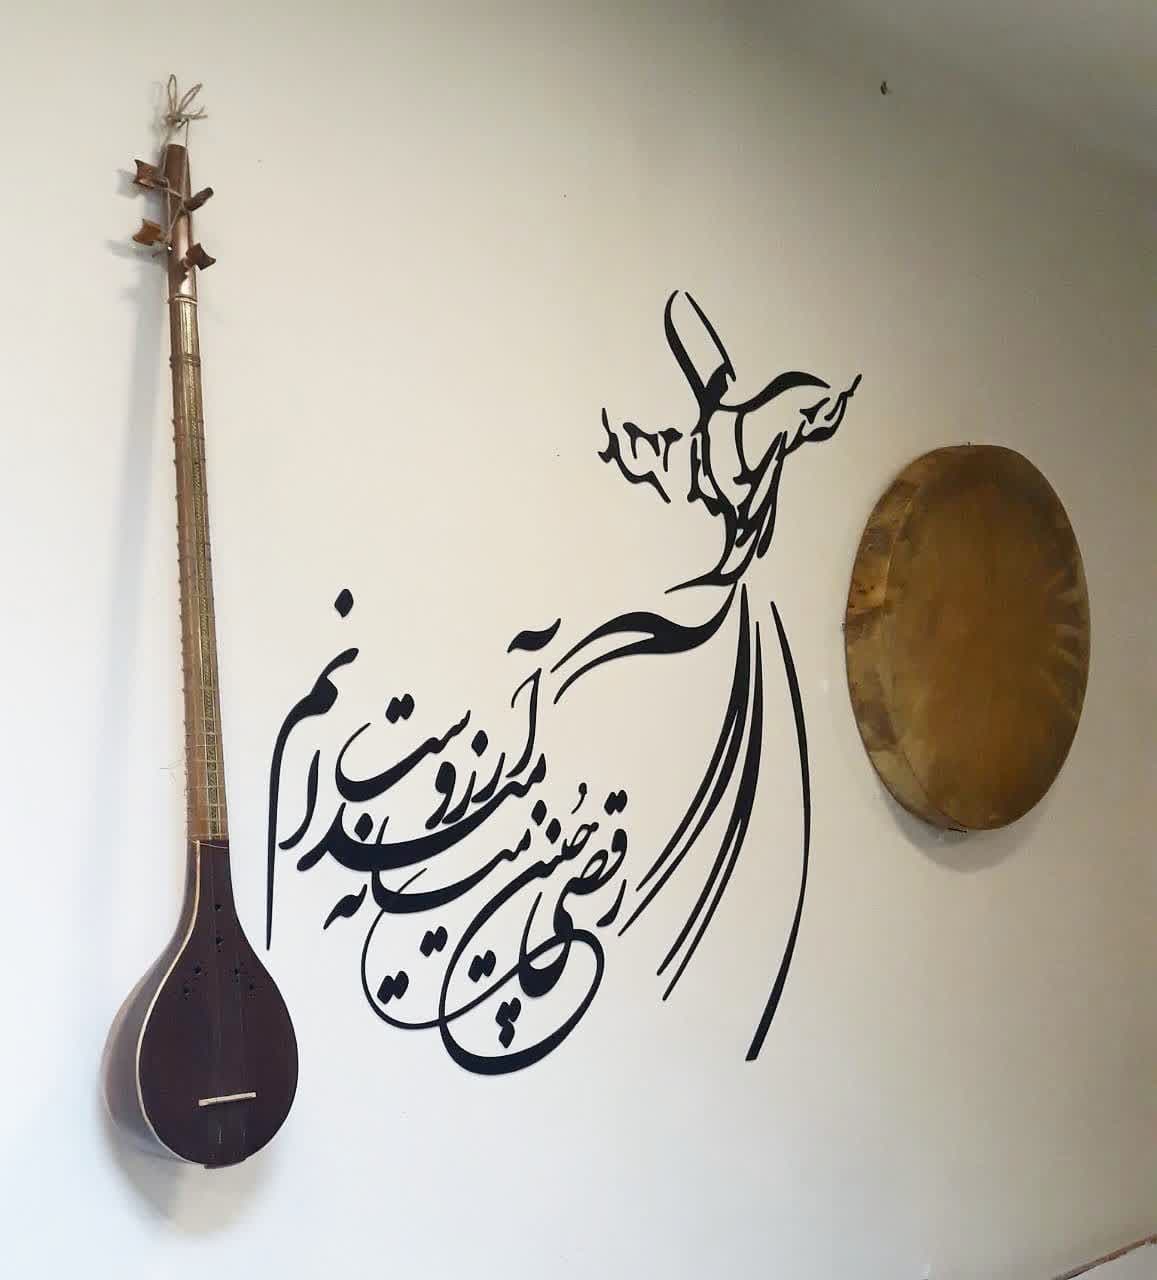 خطاطی کالیگرافی با رقص سماع  آرزوست با رقص سماع خطاطی روی خانه ایرانی